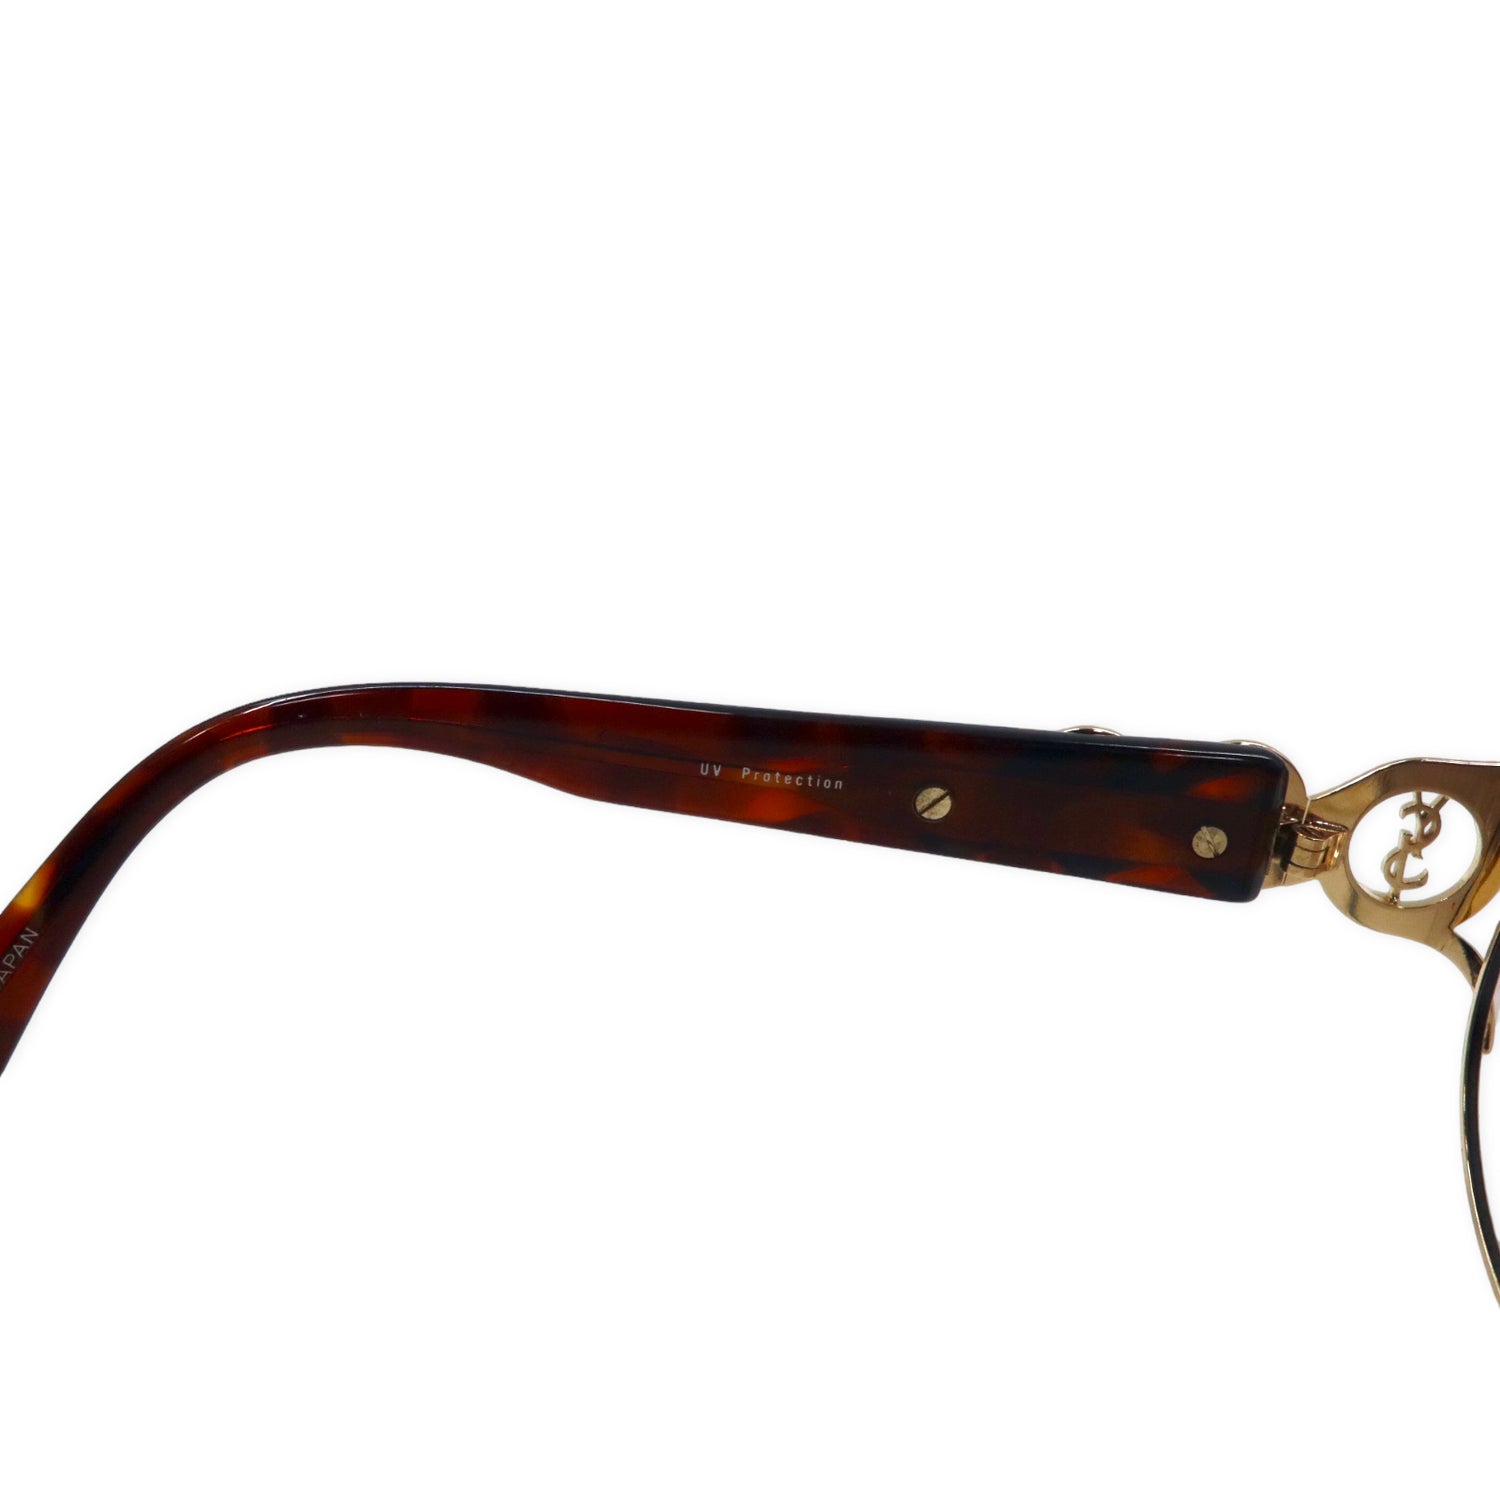 Yves Saint Laurent Sunglasses Gold Tortoiseshell Collar Lens UV 